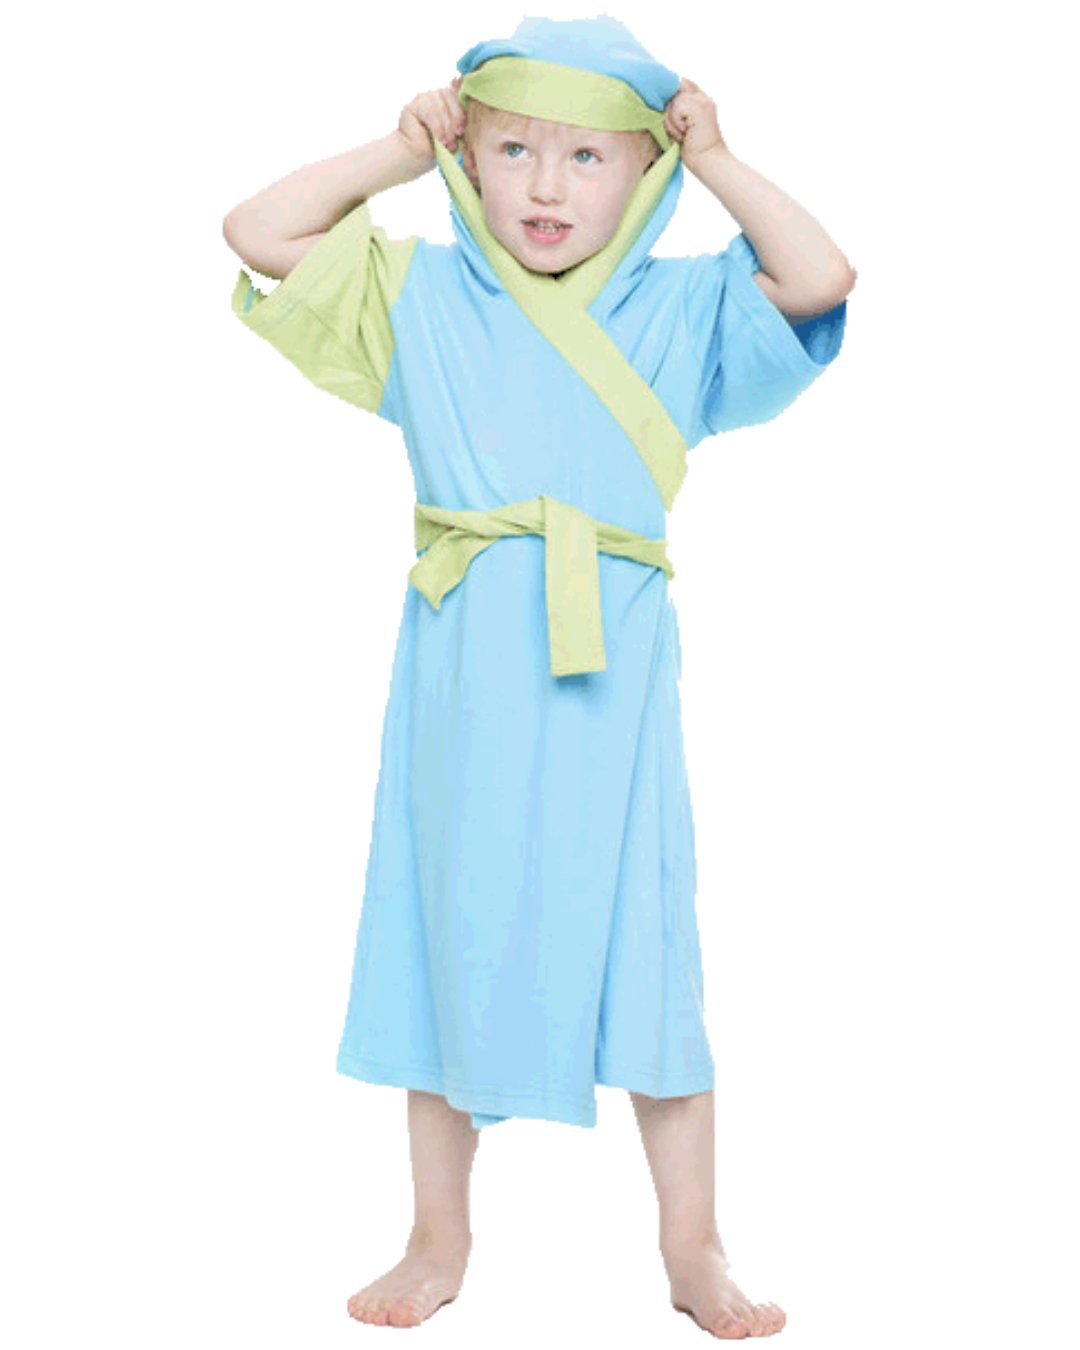 Kimono für Kinder aus Bambus und Biobaumwolle in hellblau mit einem grünen Ärmel und grünem Gürtel